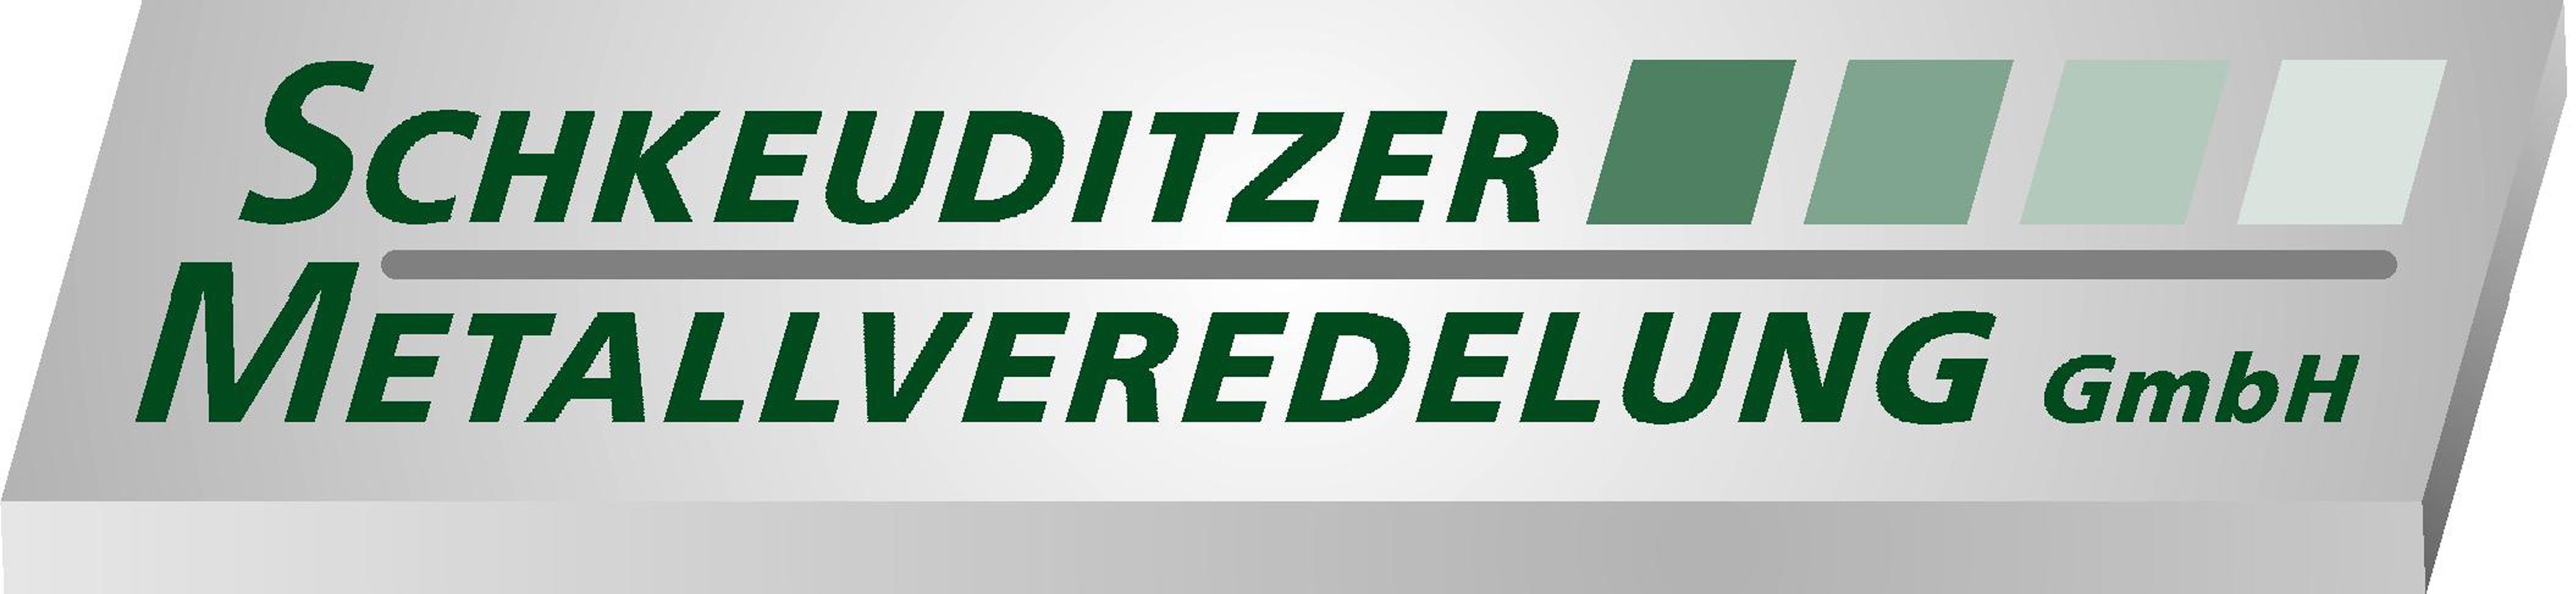 Schkeuditzer Metallveredlung GmbH